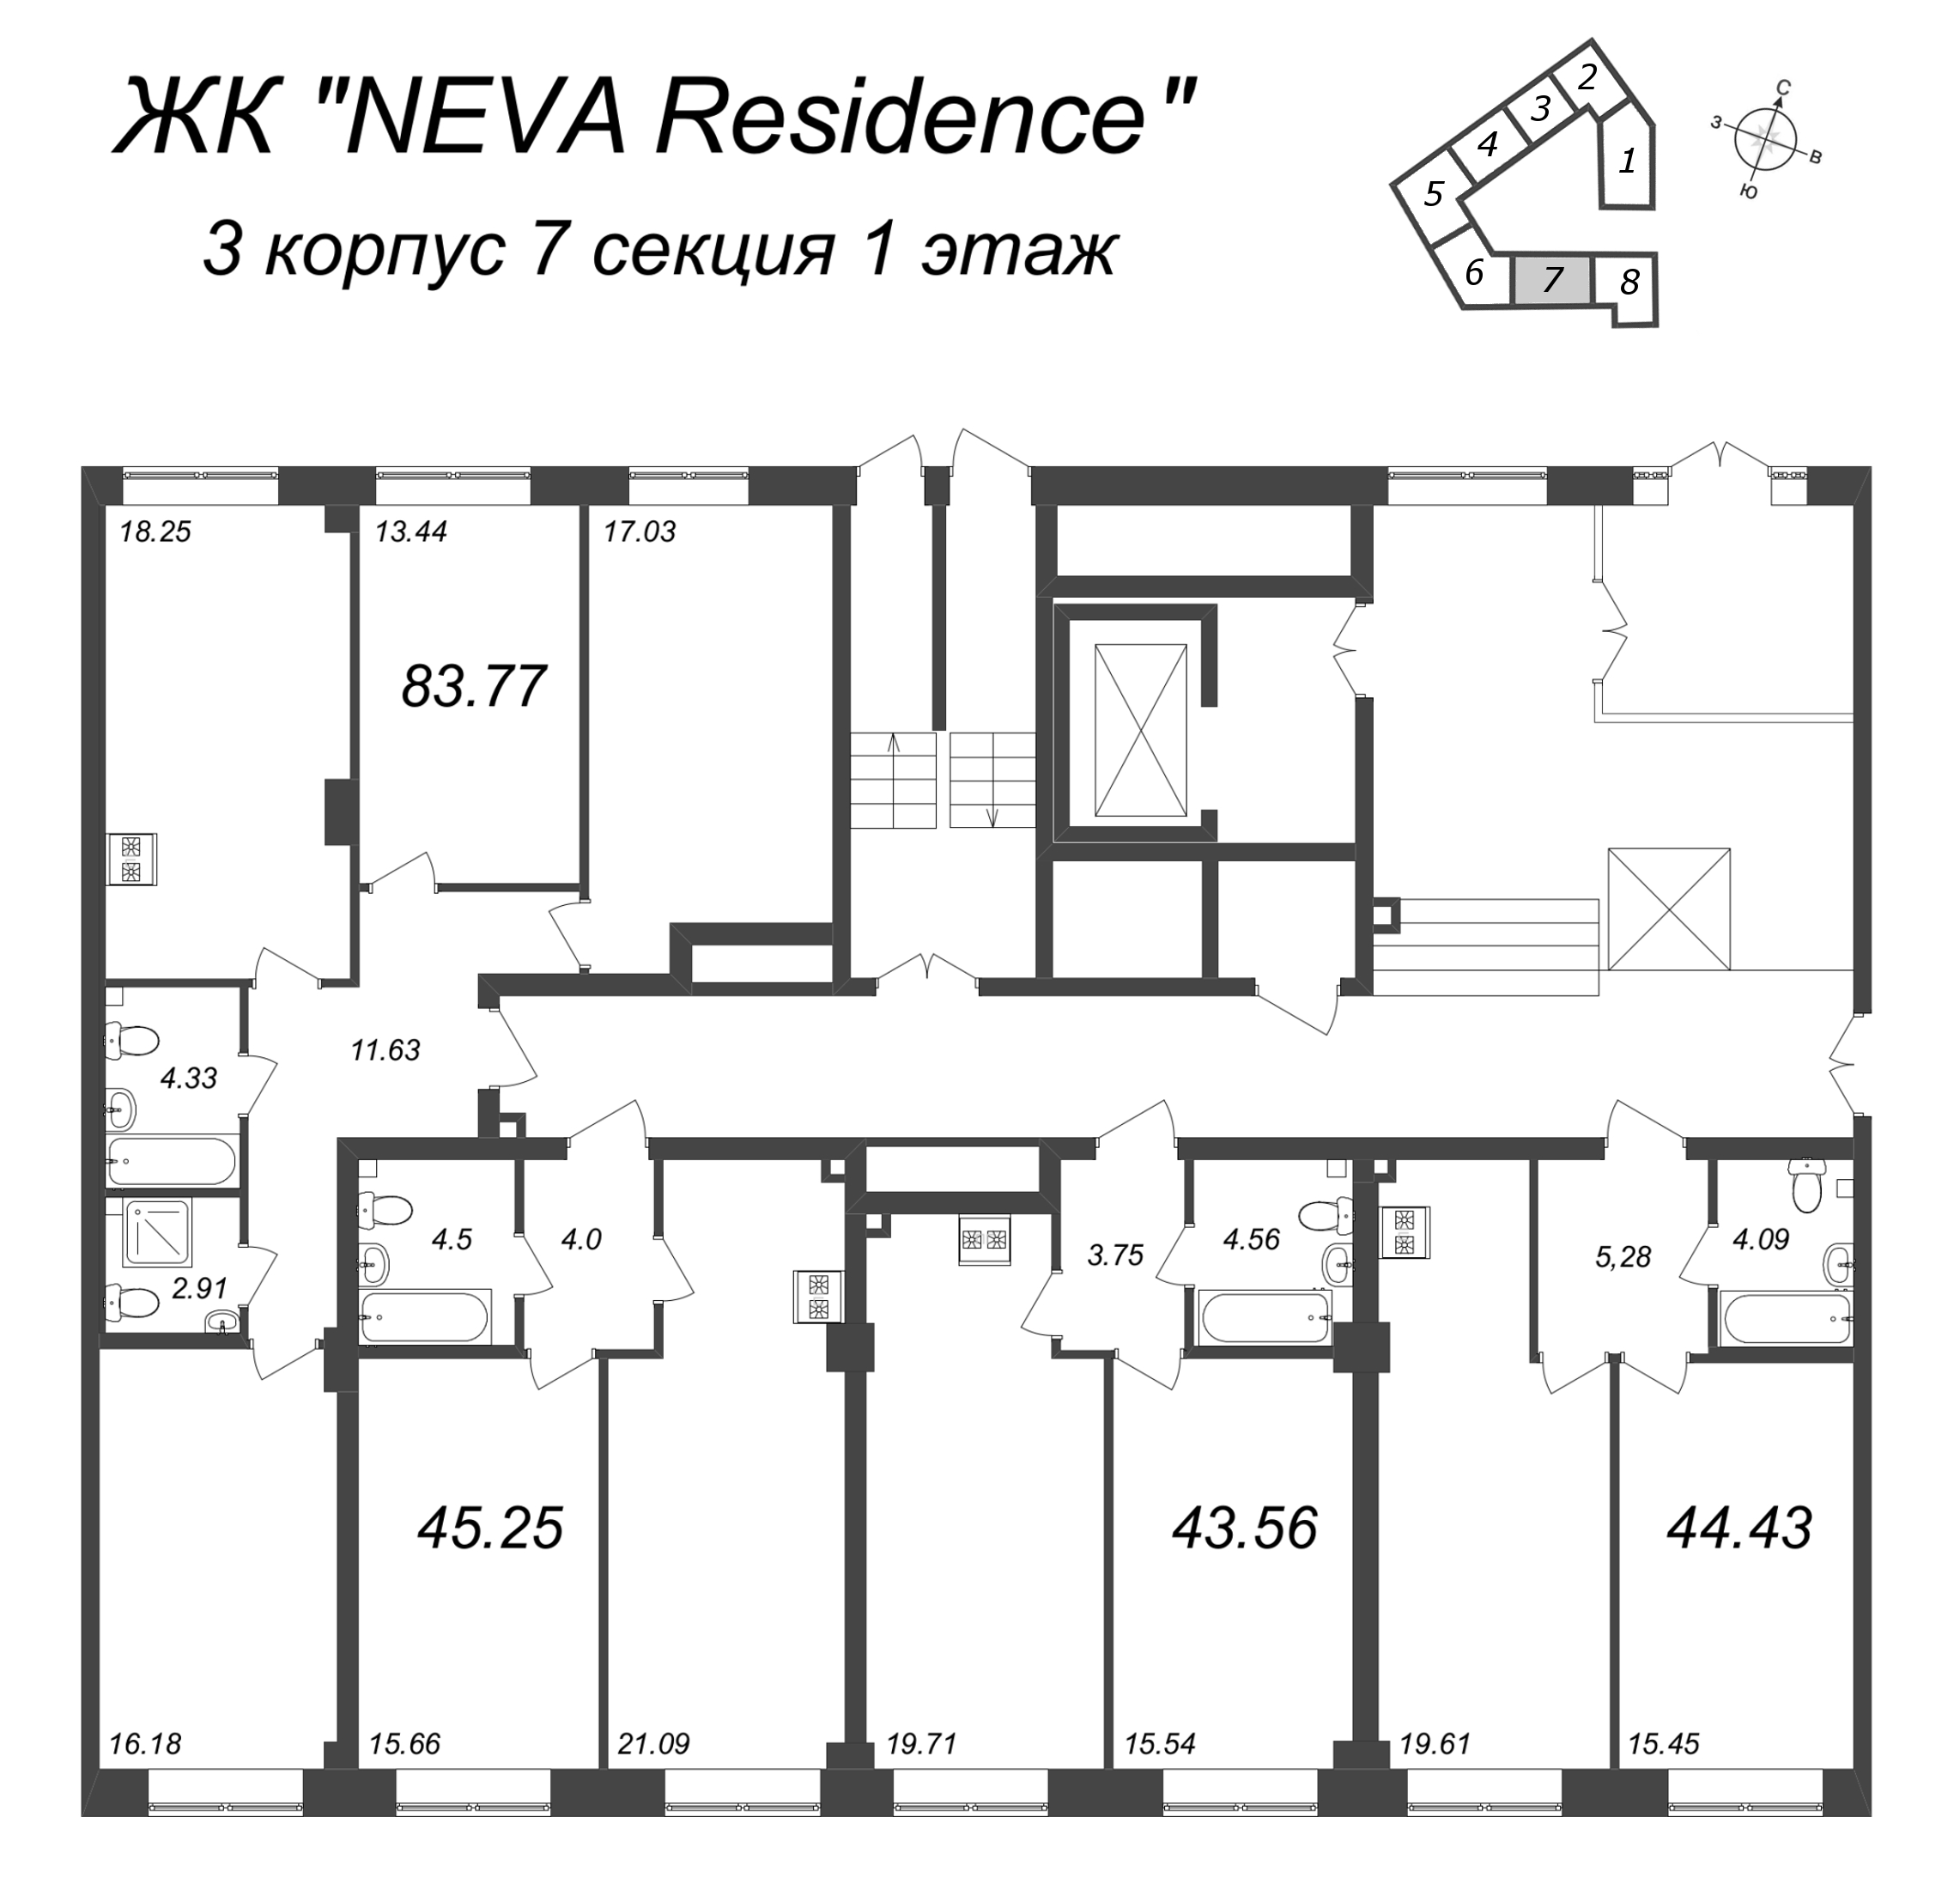 2-комнатная (Евро) квартира, 43.56 м² в ЖК "Neva Residence" - планировка этажа